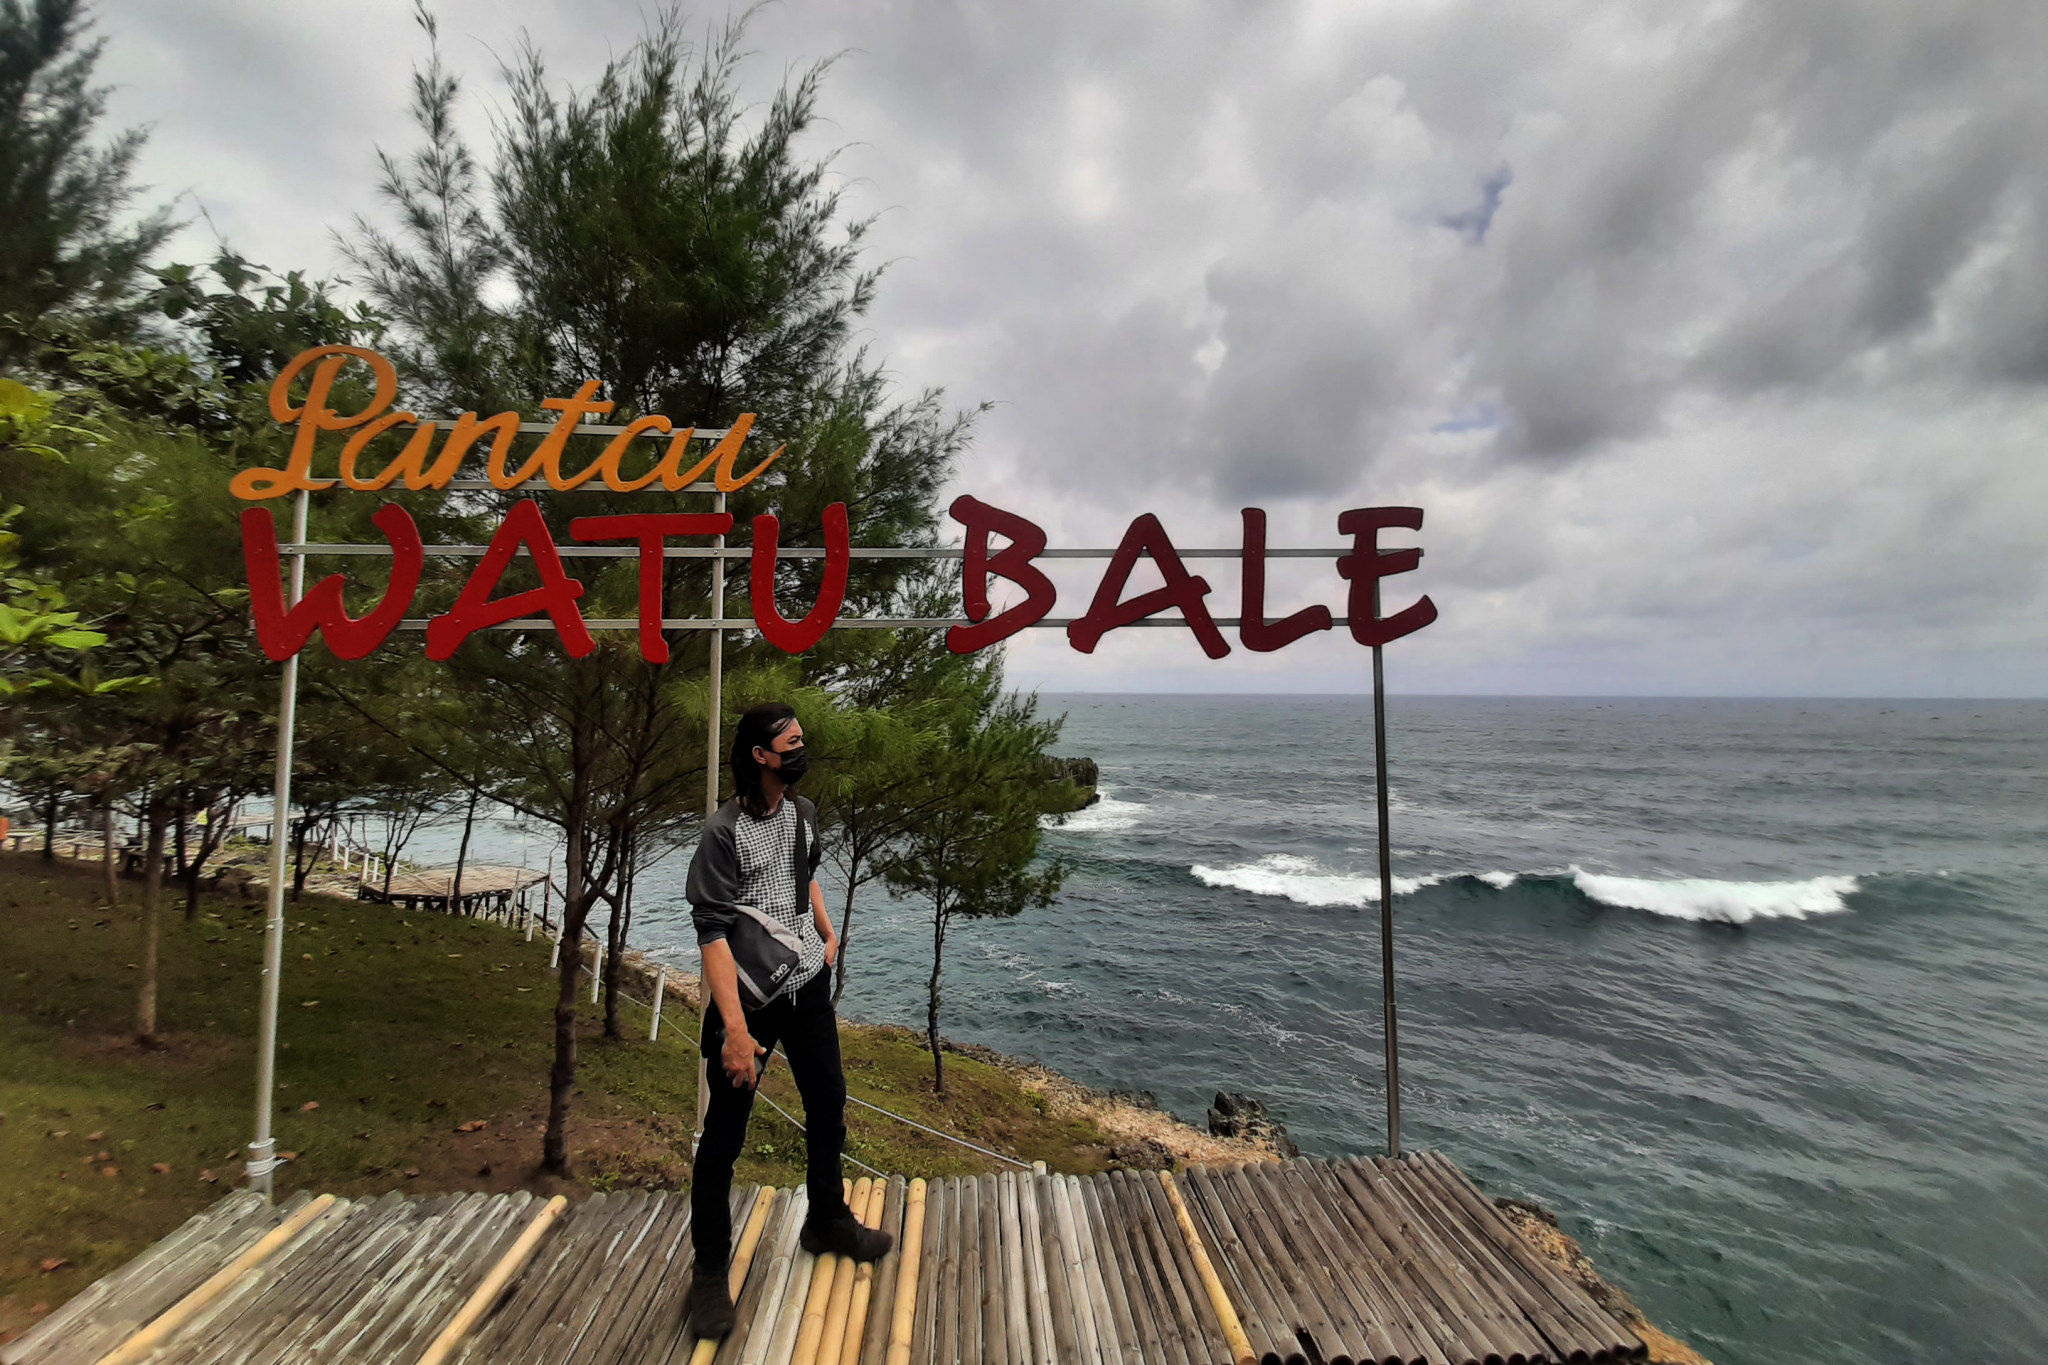 Wisatawan menikmati panorama pantai di Pantai Watu Bale, Kecamatan Tulakan, Kabupaten Pacitan, Jawa Timur, Sabtu, 9 Oktober 2021. Foto: Ismail Pohan/TrenAsia